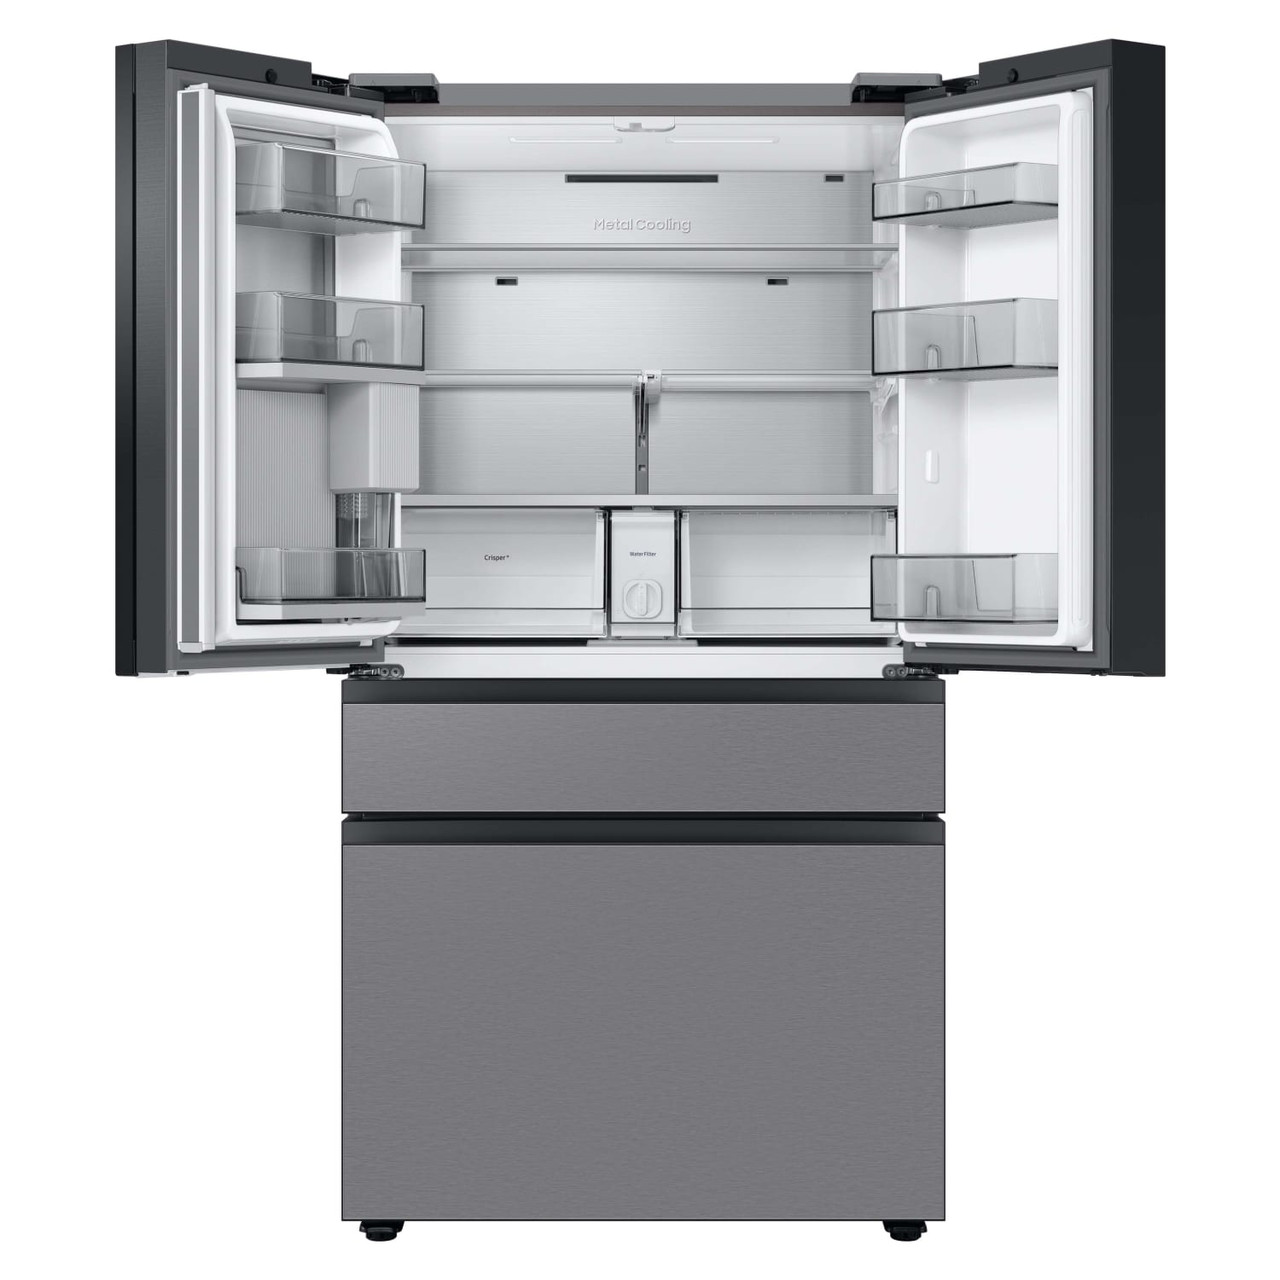 Samsung BESPOKE 23 c.f. Smart 4-Door French-Door Refrigerator in Stainless Steel